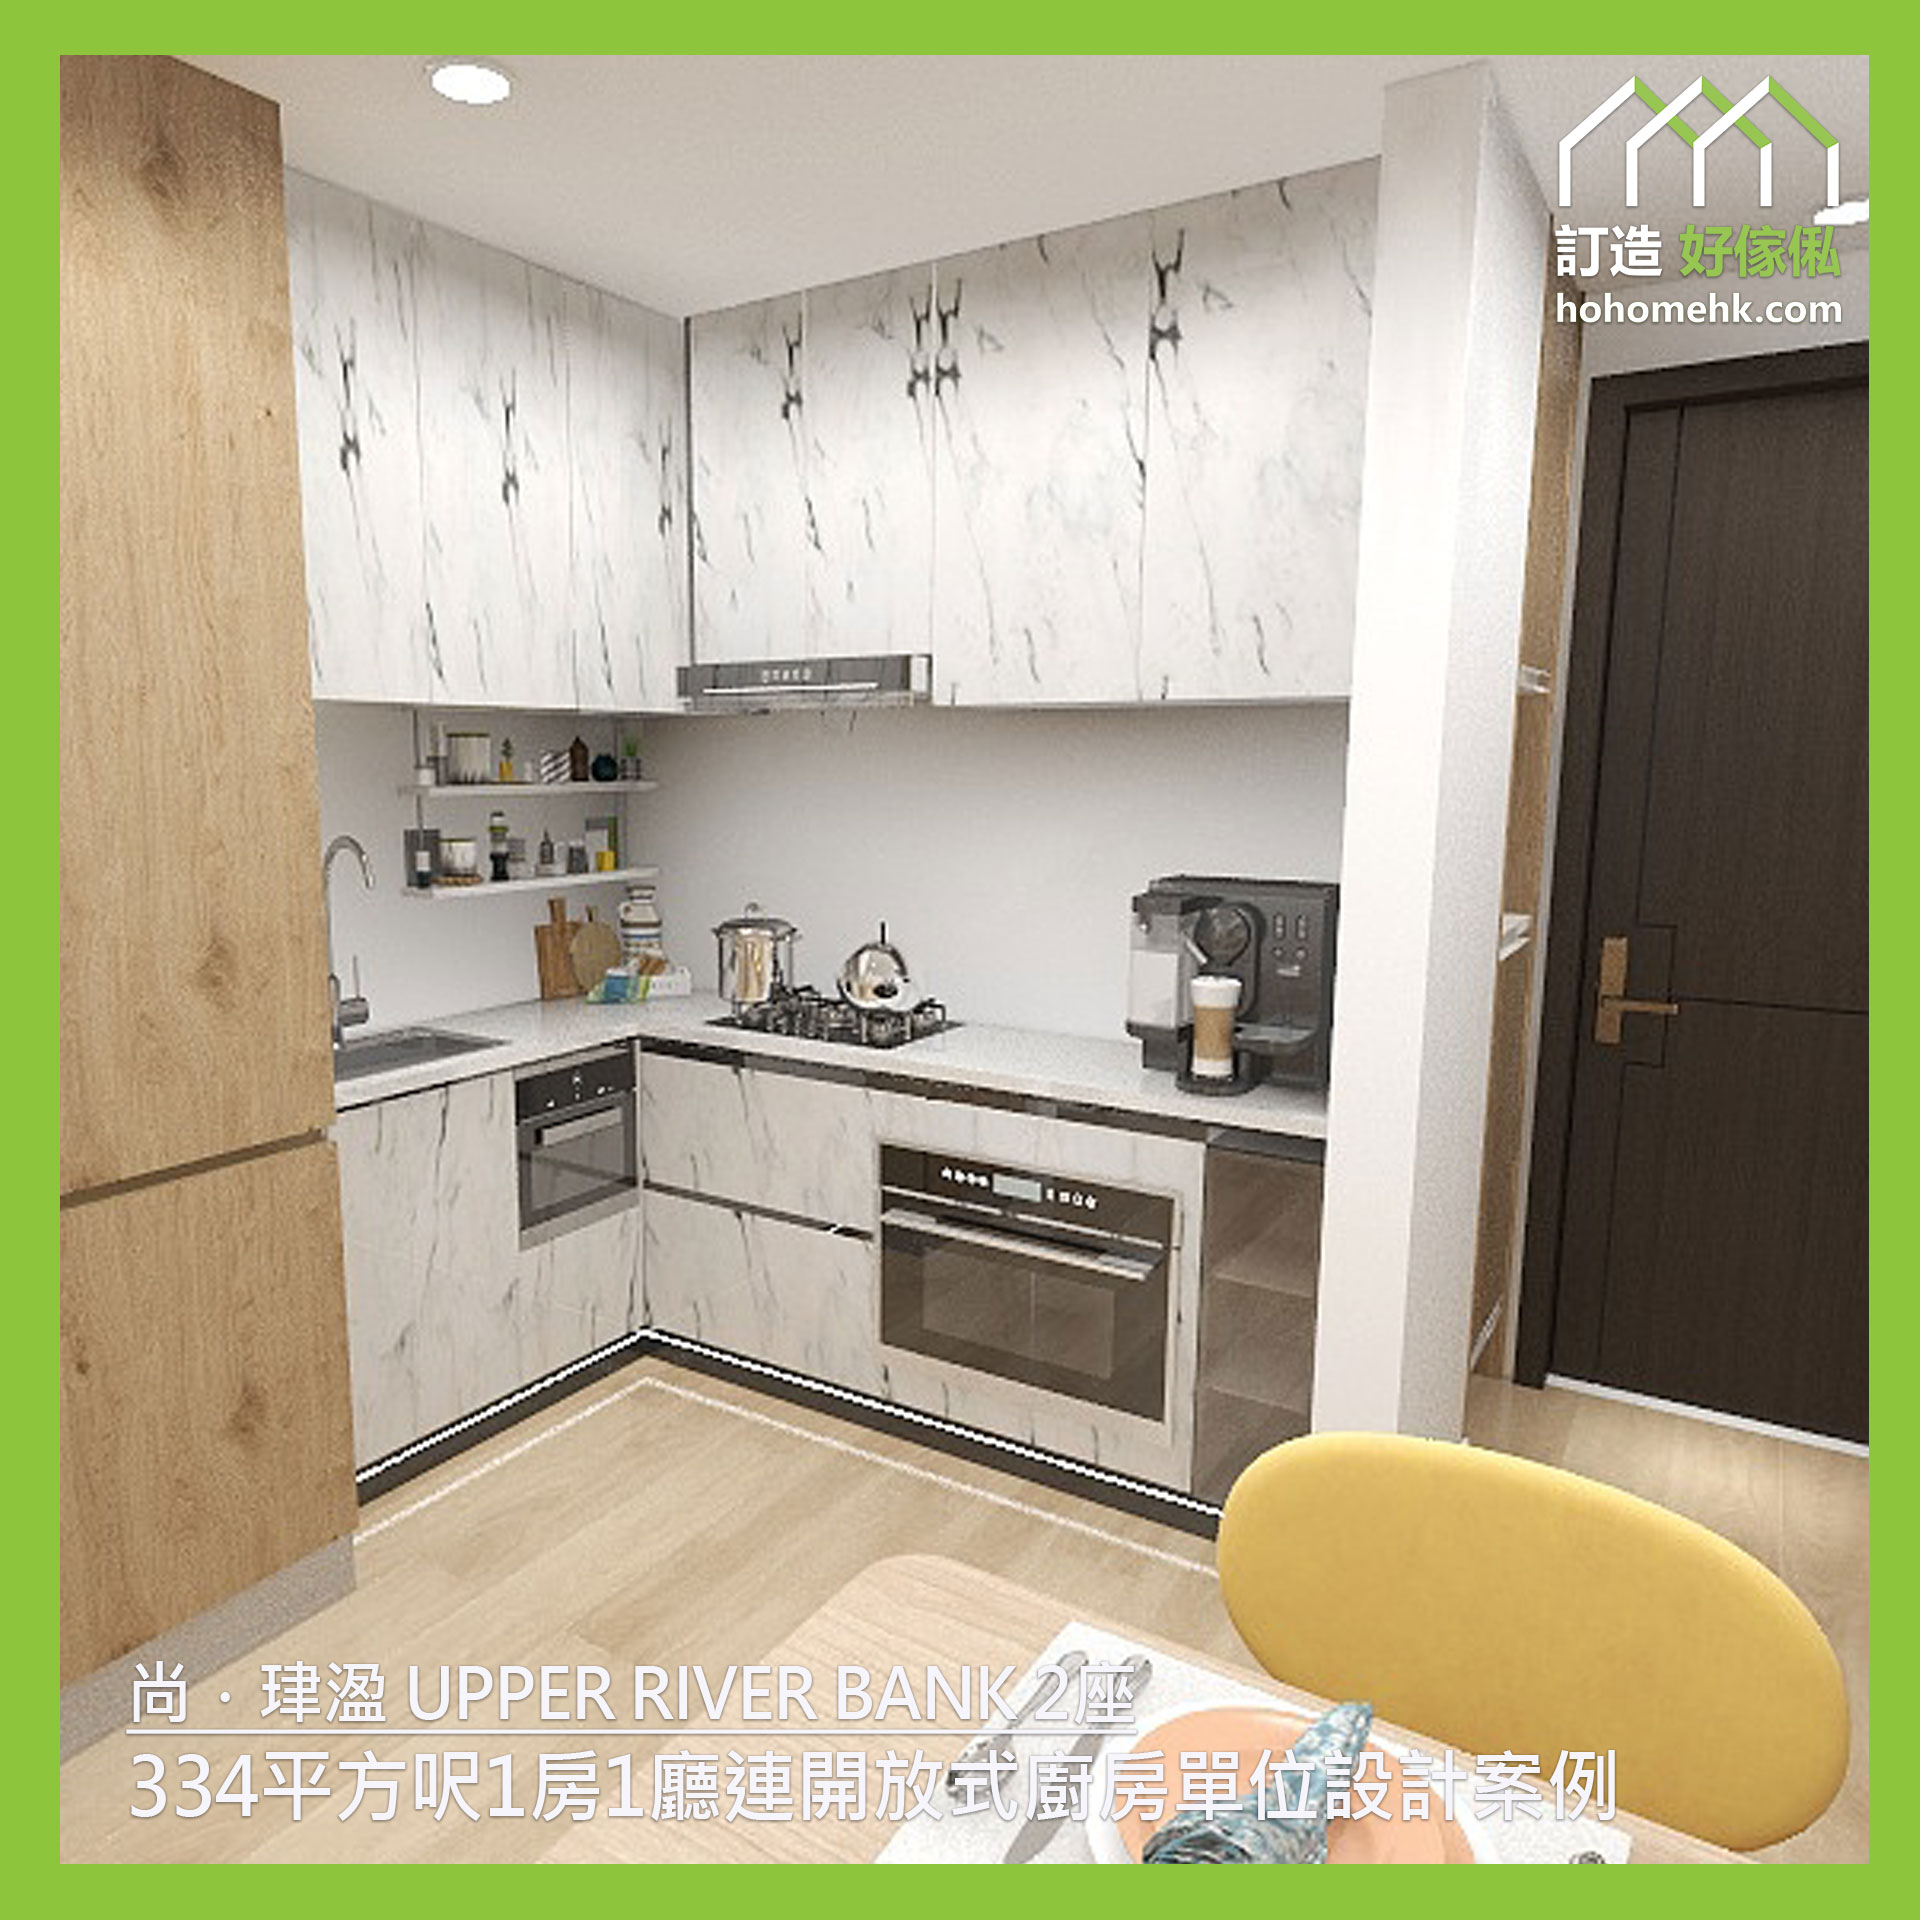 尚．珒溋 UPPER RIVERBANK - 334平方呎1房1廳連開放式廚房單位設計案例